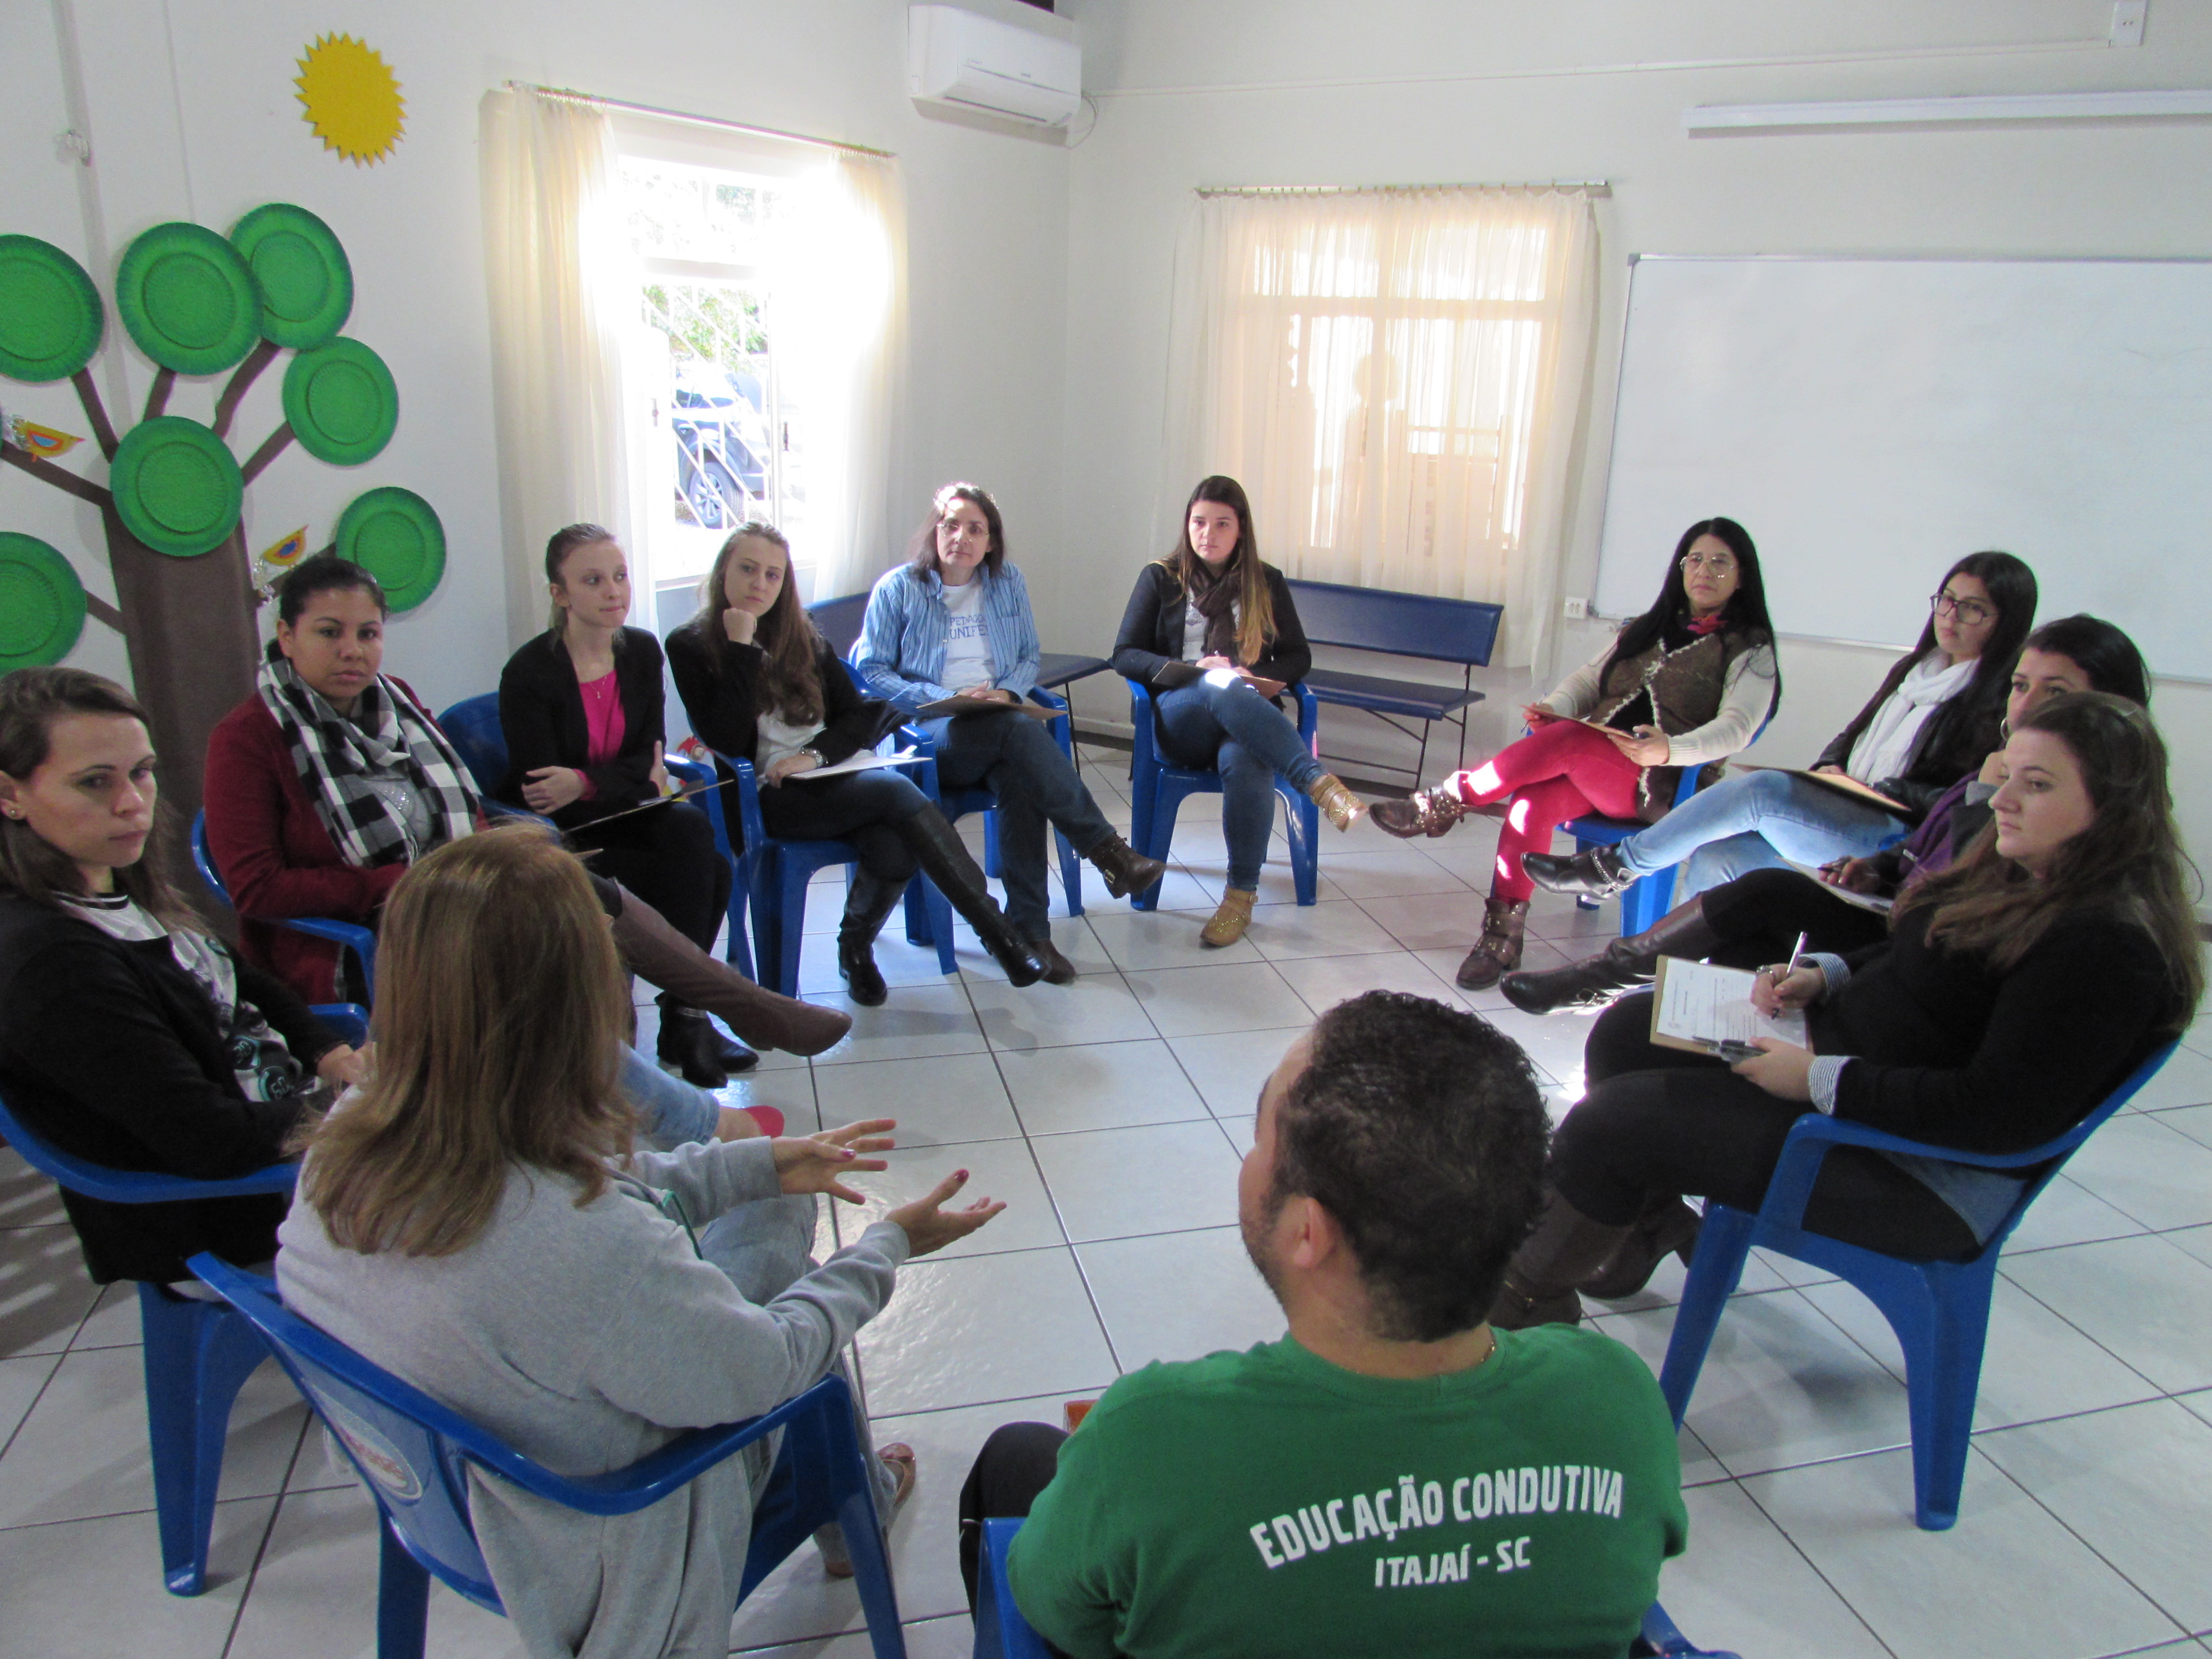 Visita técnica de Pedagogia estuda educação condutiva em Itajaí